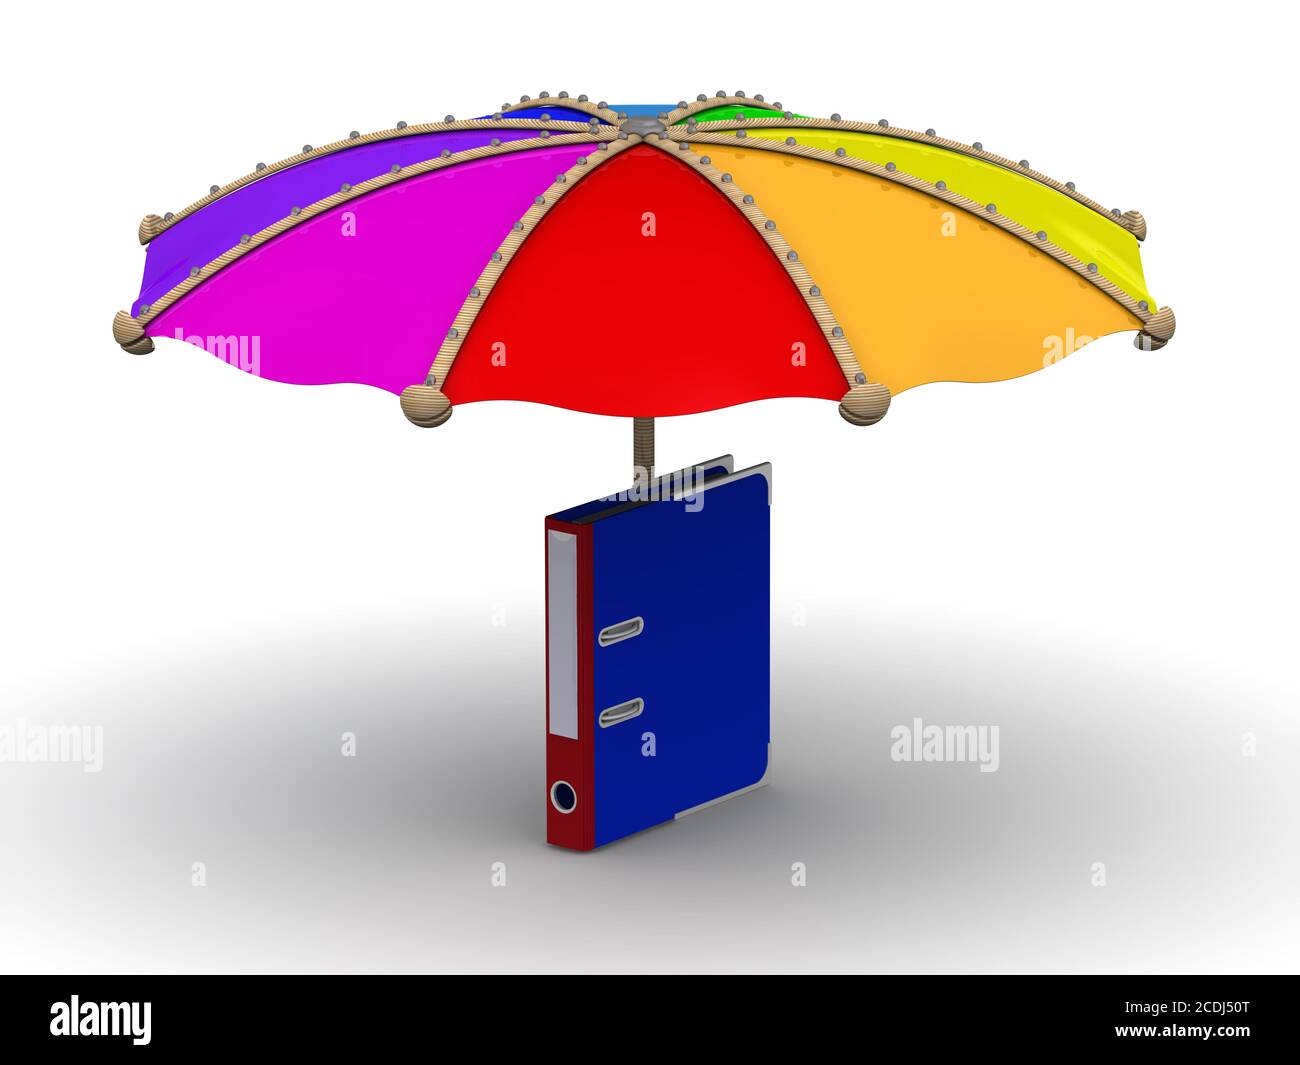 Protection des données. La chemise en anneau se trouve sous le parasol sur une surface blanche. Illustration 3D Banque D'Images